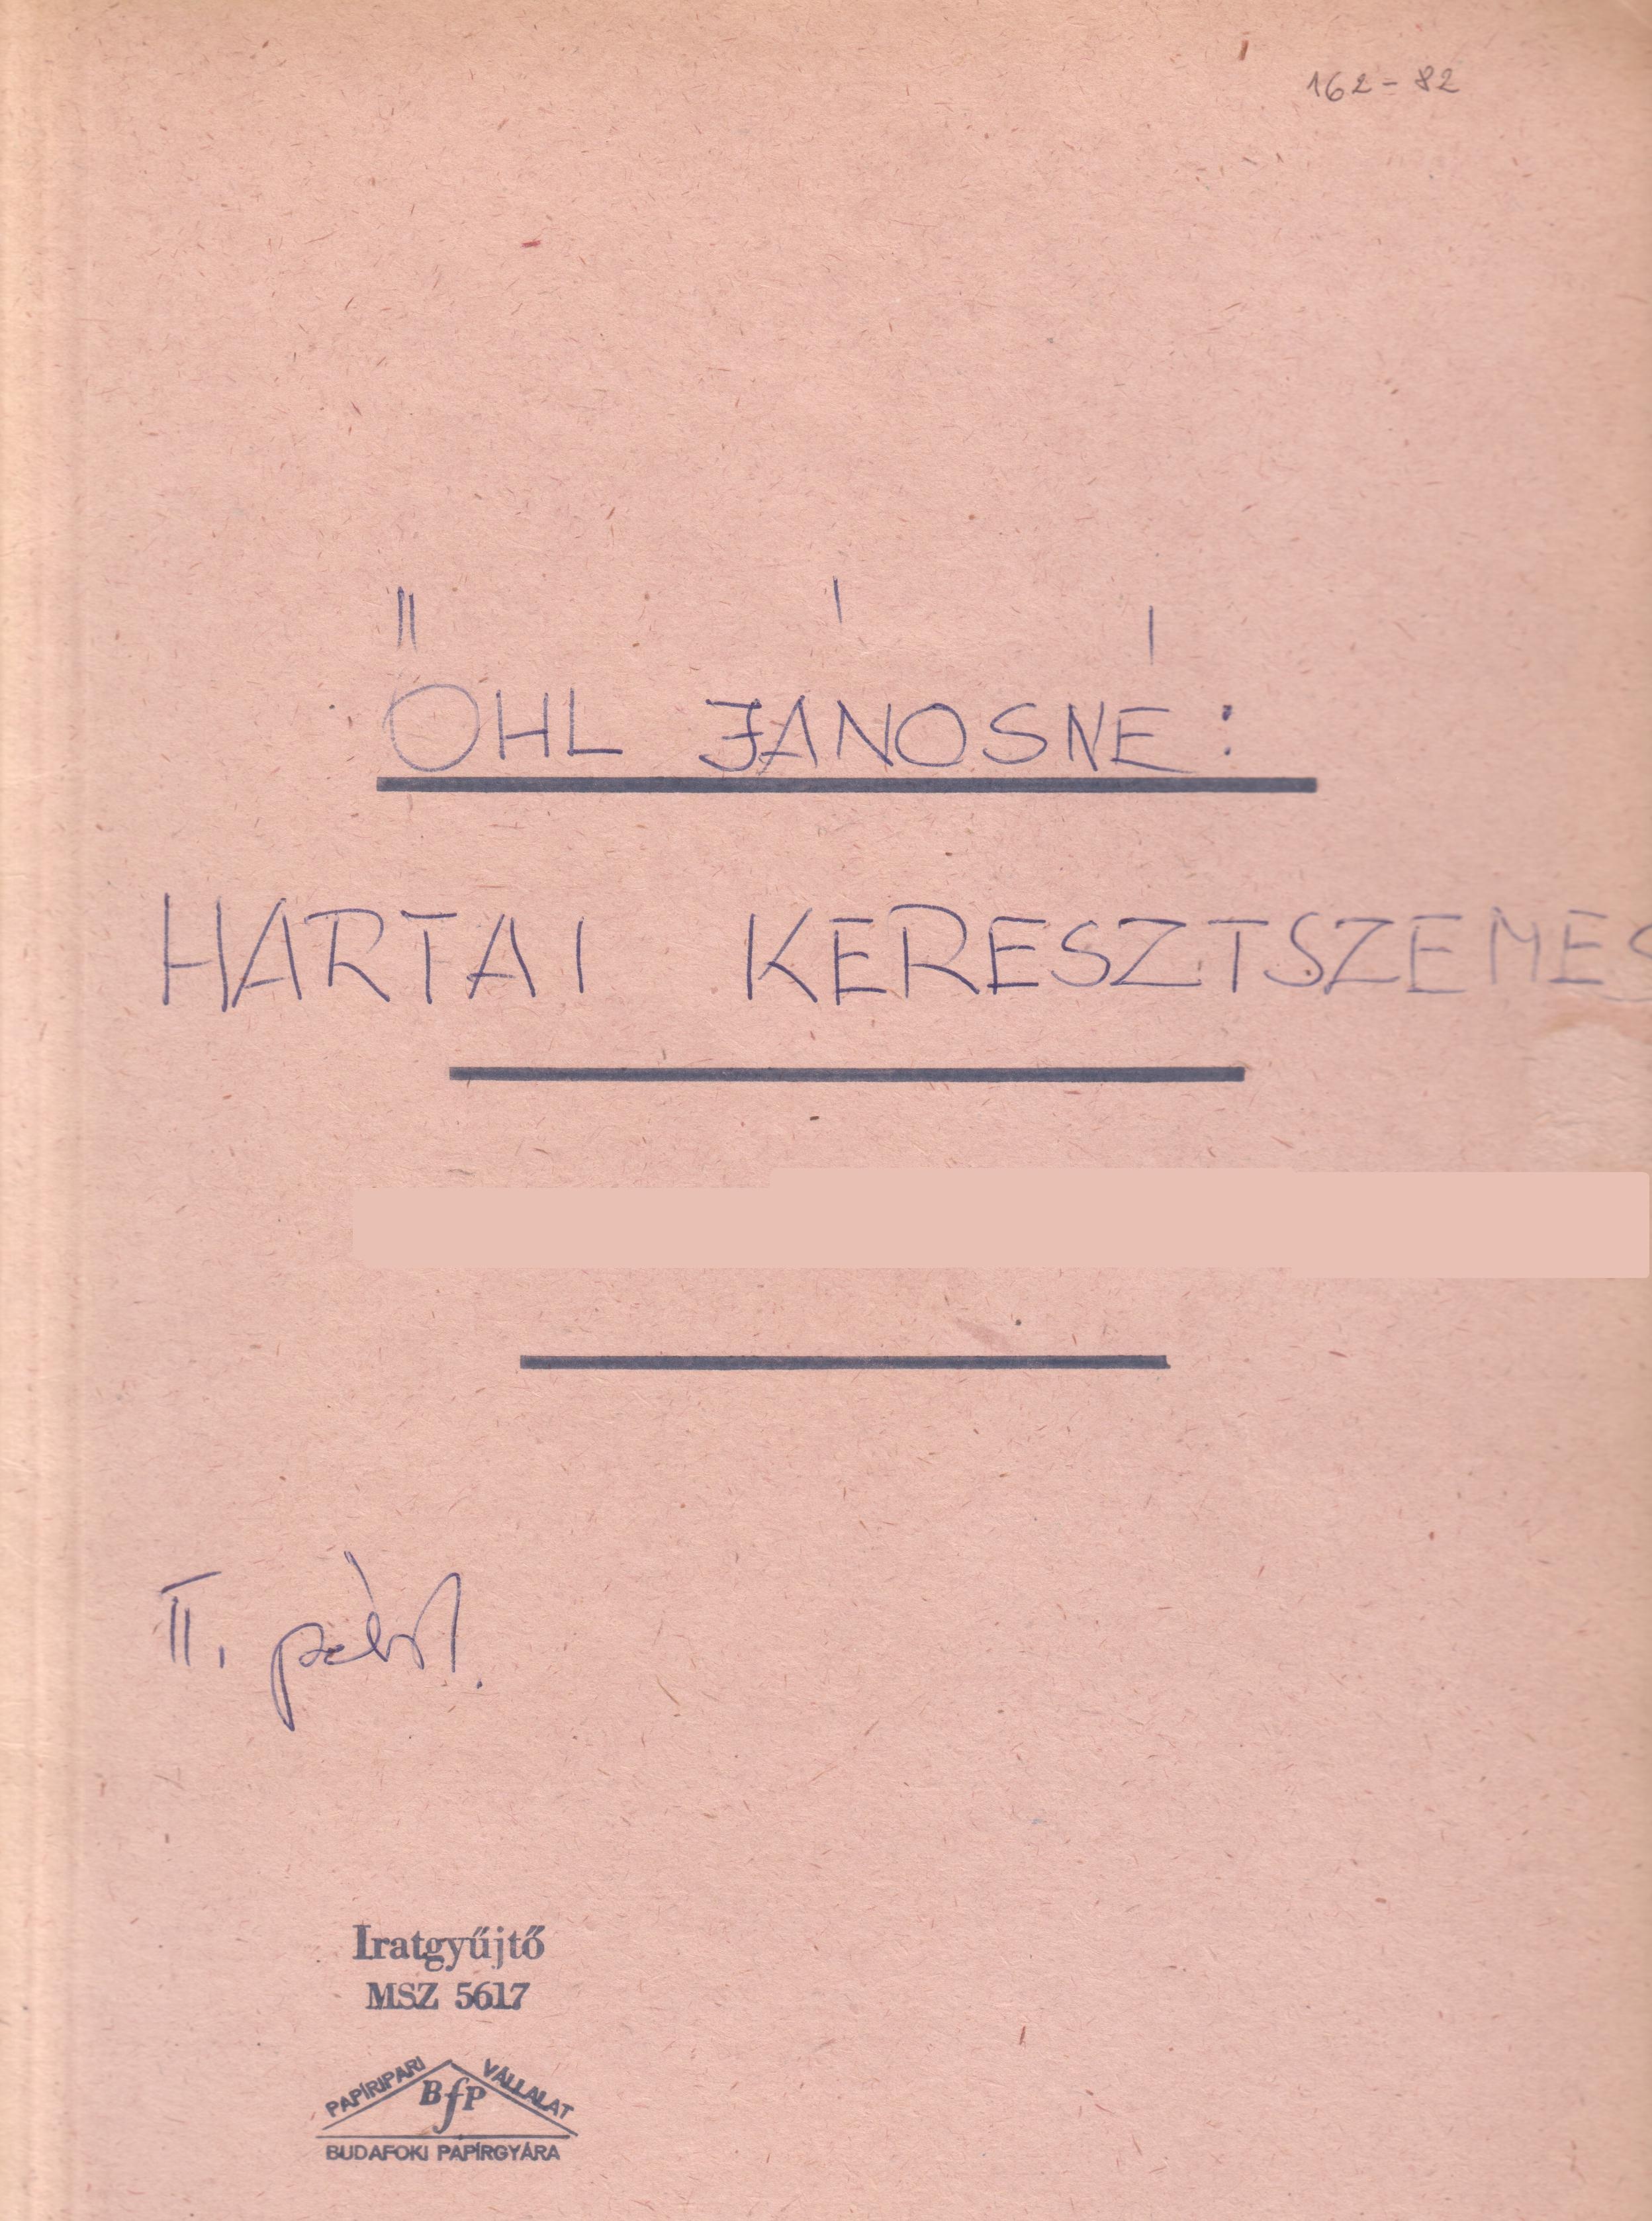 Hartai német keresztszemes c. pályázat gépirata. (Viski Károly Múzeum Kalocsa RR-F)